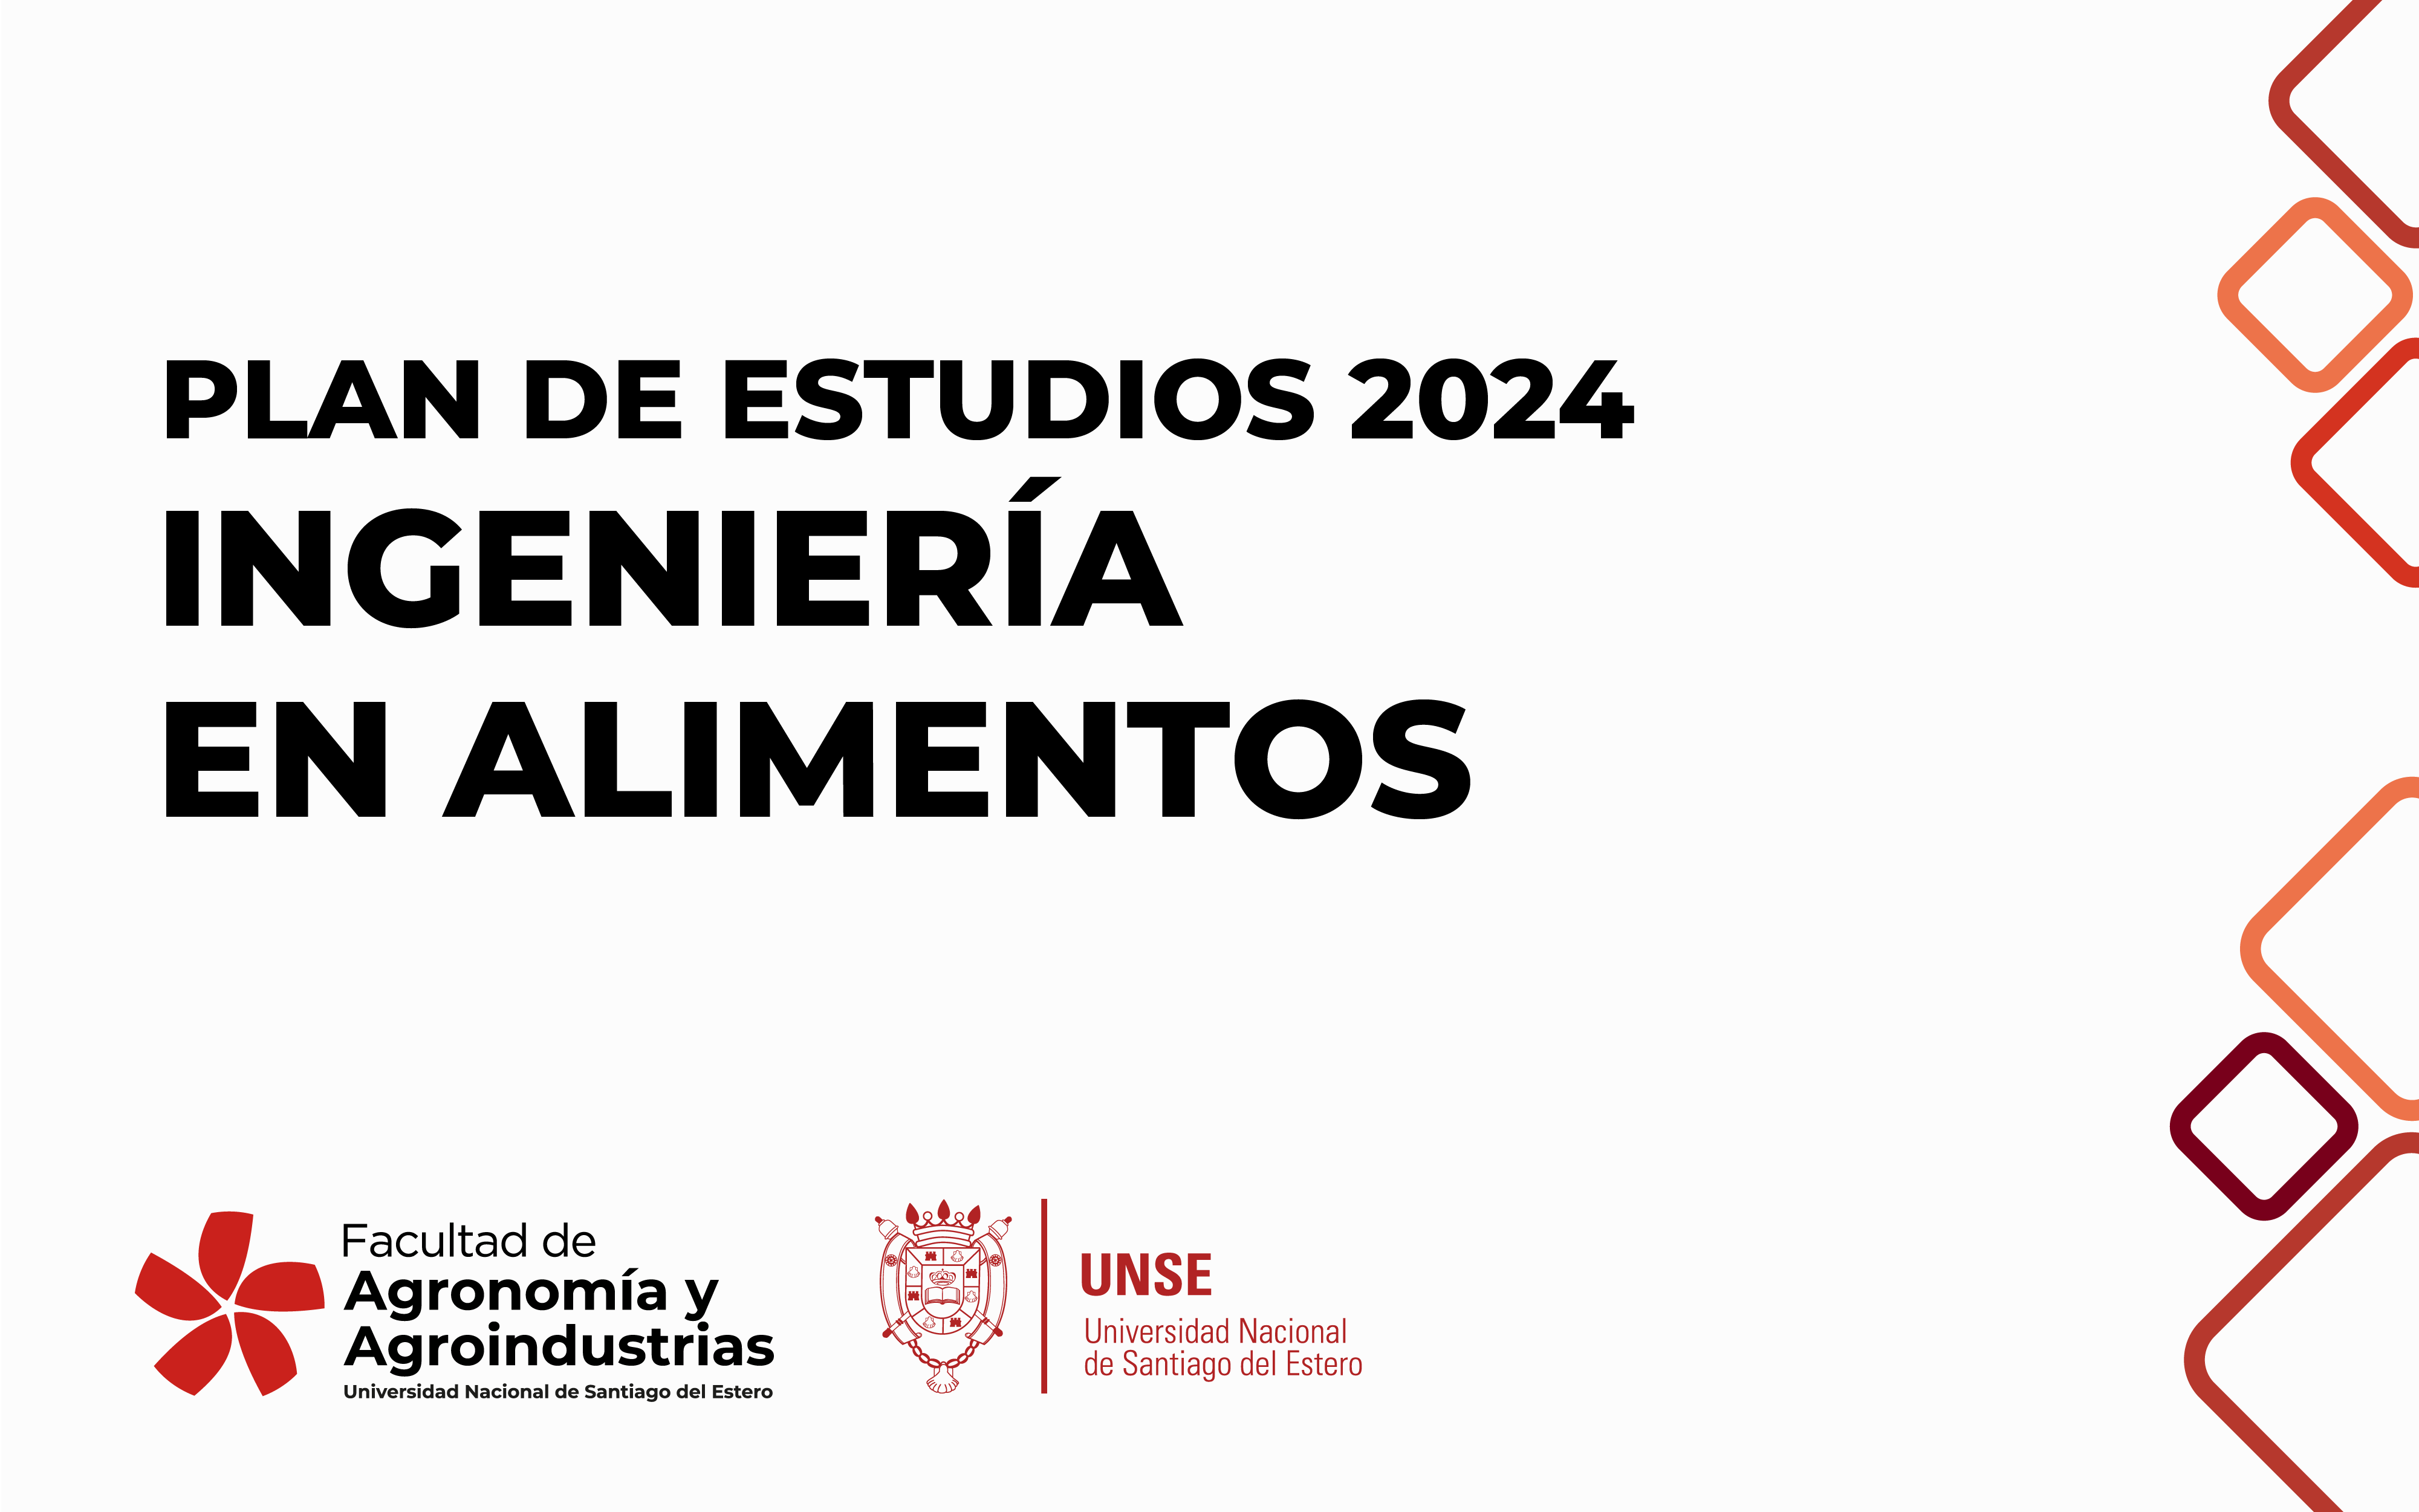 PLAN DE ESTUDIOS 2024 DE INGENIERÍA EN ALIMENTOS